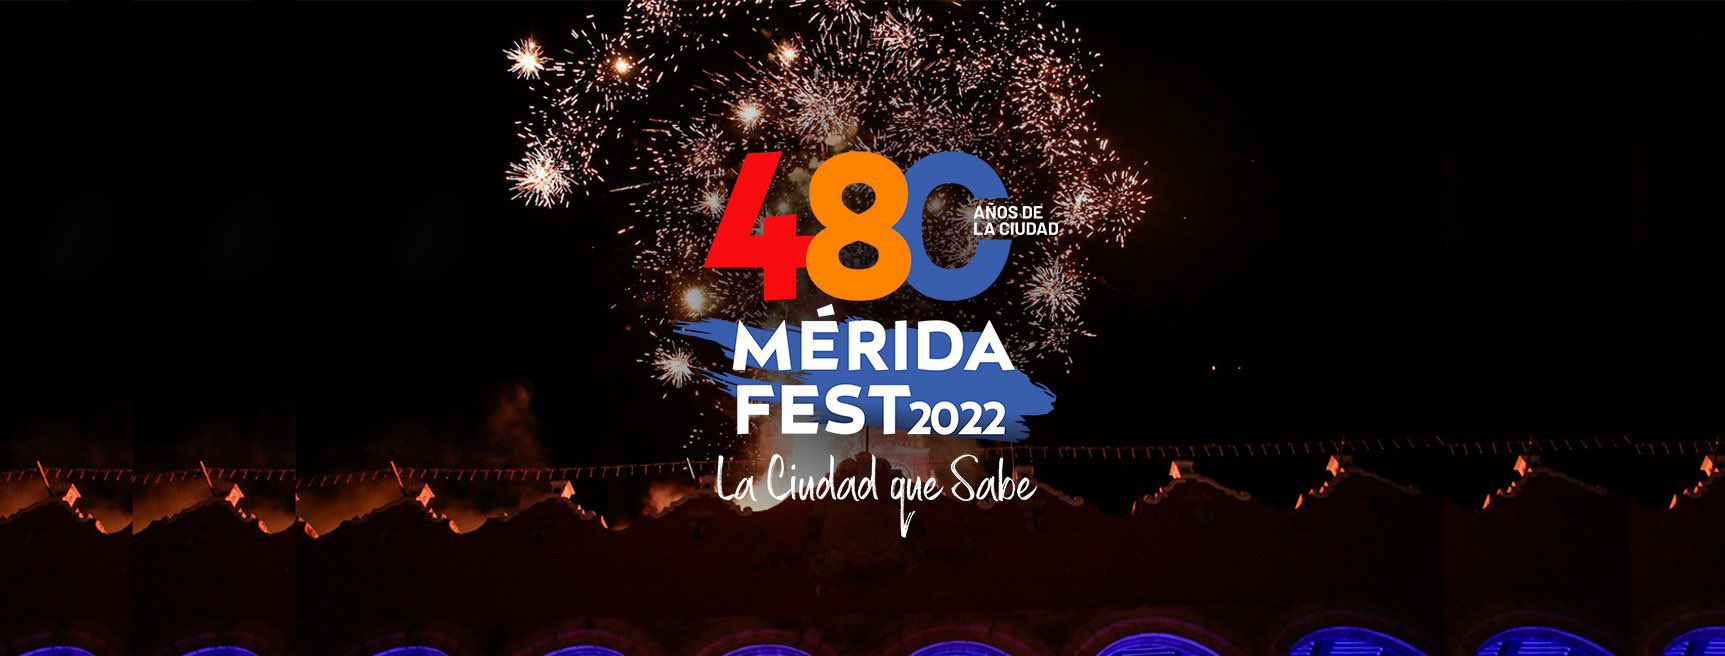 Mérida celebra su 480 aniversario de fundación